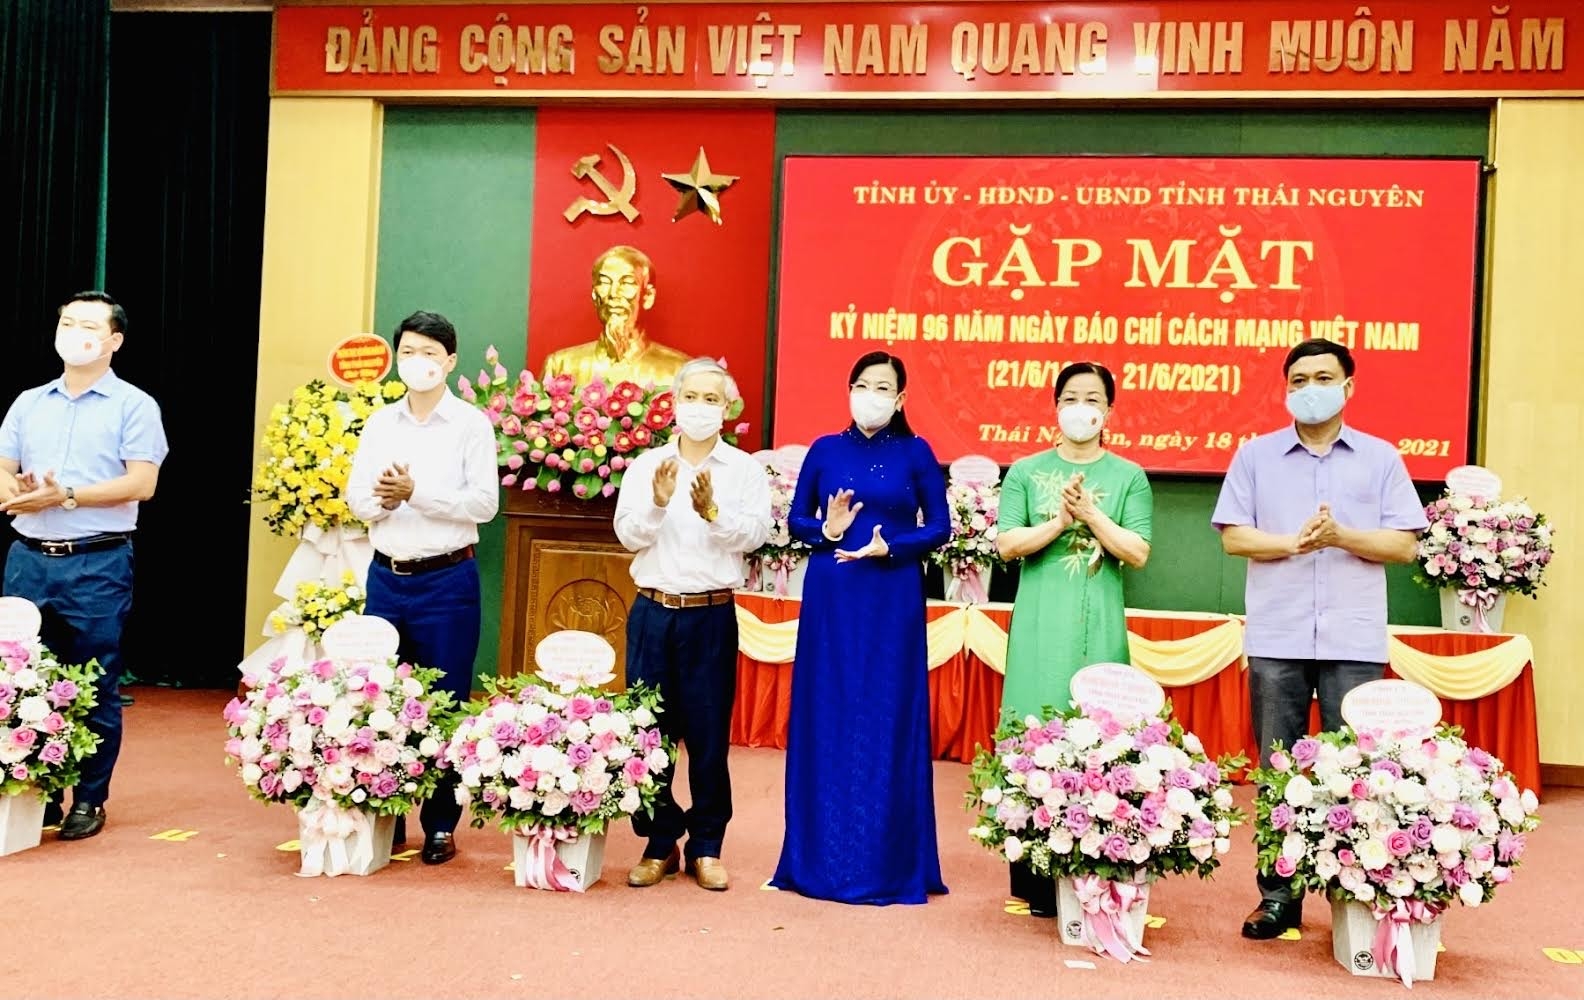 Lãnh đạo tỉnh Thái Nguyên chúc mừng Hội Nhà báo và các cơ quan báo chí nhân ngày Báo chí cách mạng Việt Nam 21/6/2021